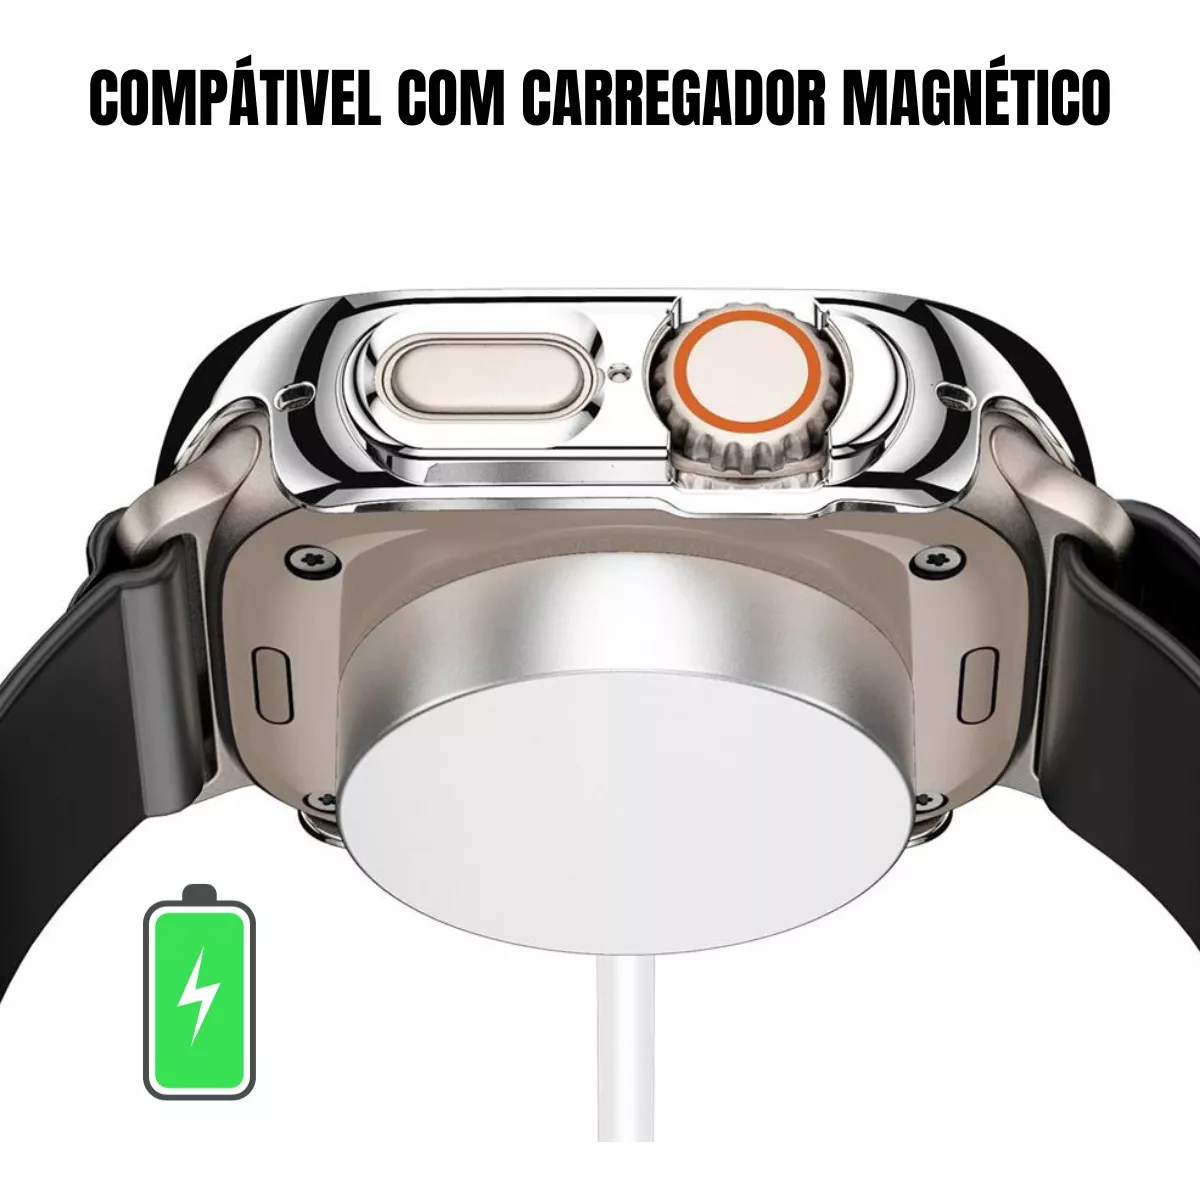 Segunda imagem para pesquisa de capa de relogio smartwatch